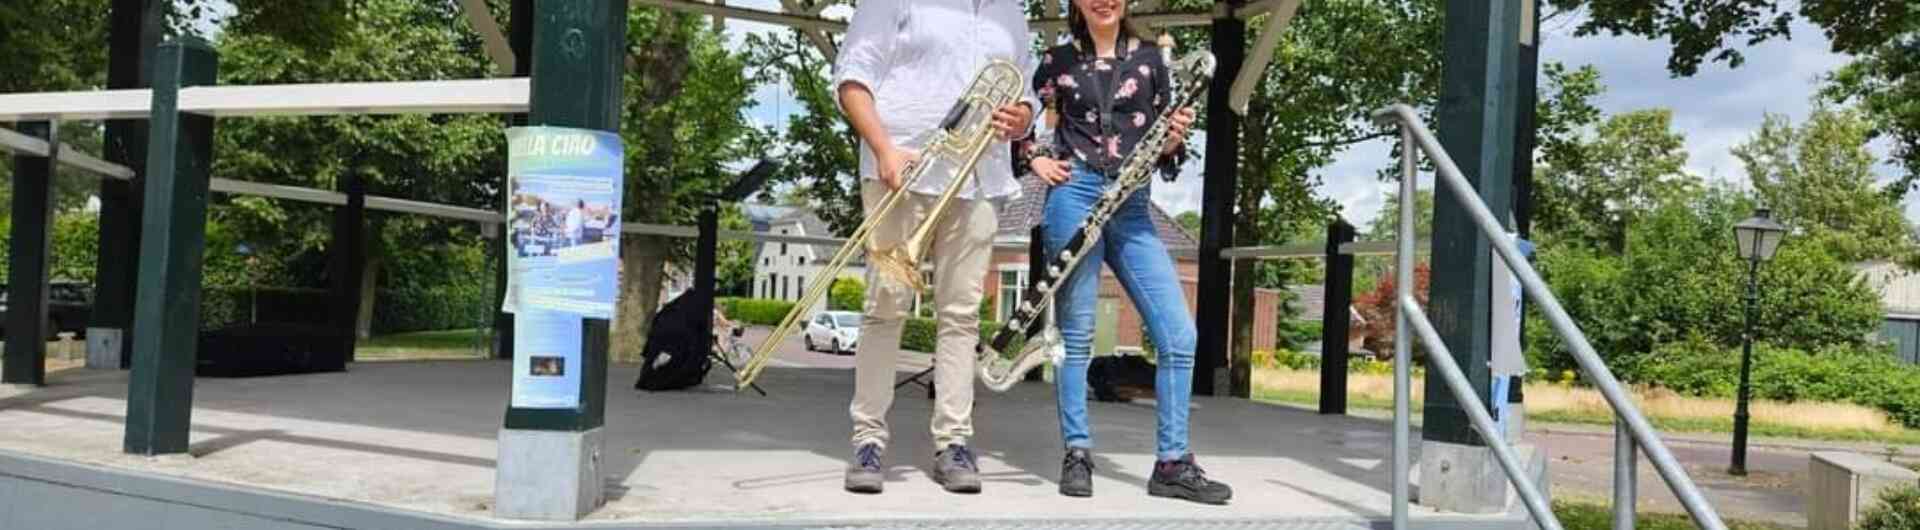 Basklarinettiste Femke van den Bergh en trombonist Giordano Mor